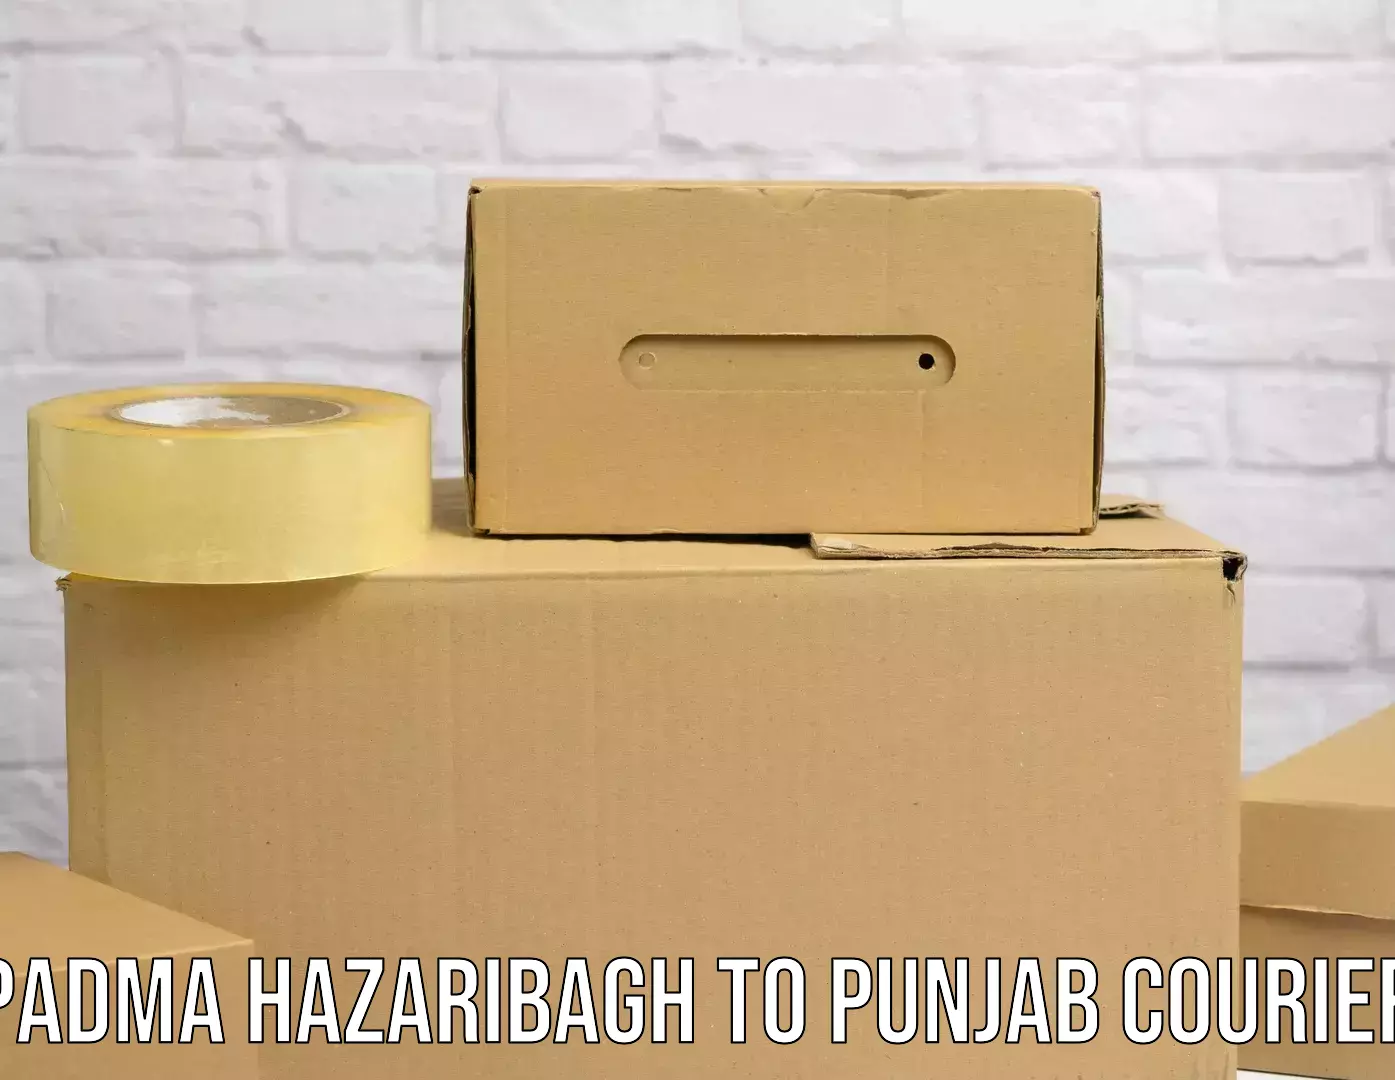 Expedited shipping methods Padma Hazaribagh to Punjab